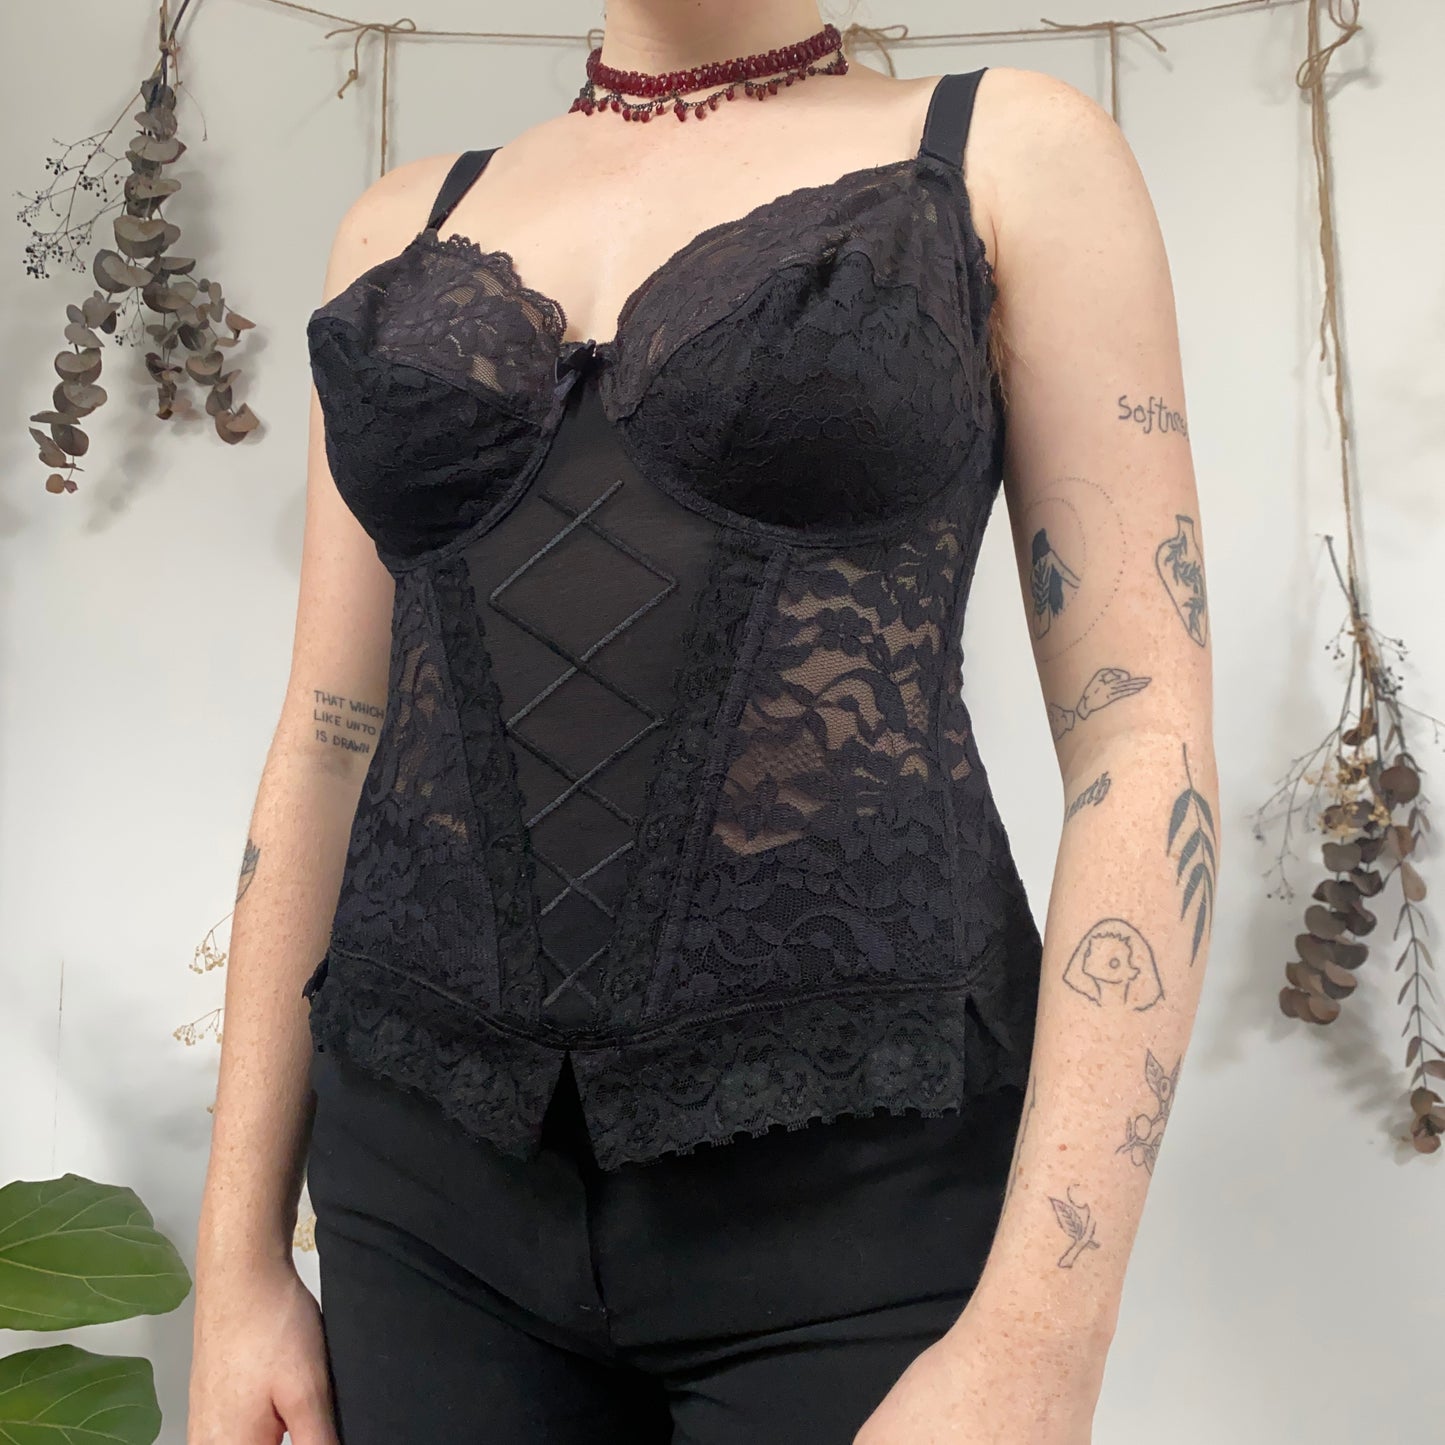 Black lace corset - size M